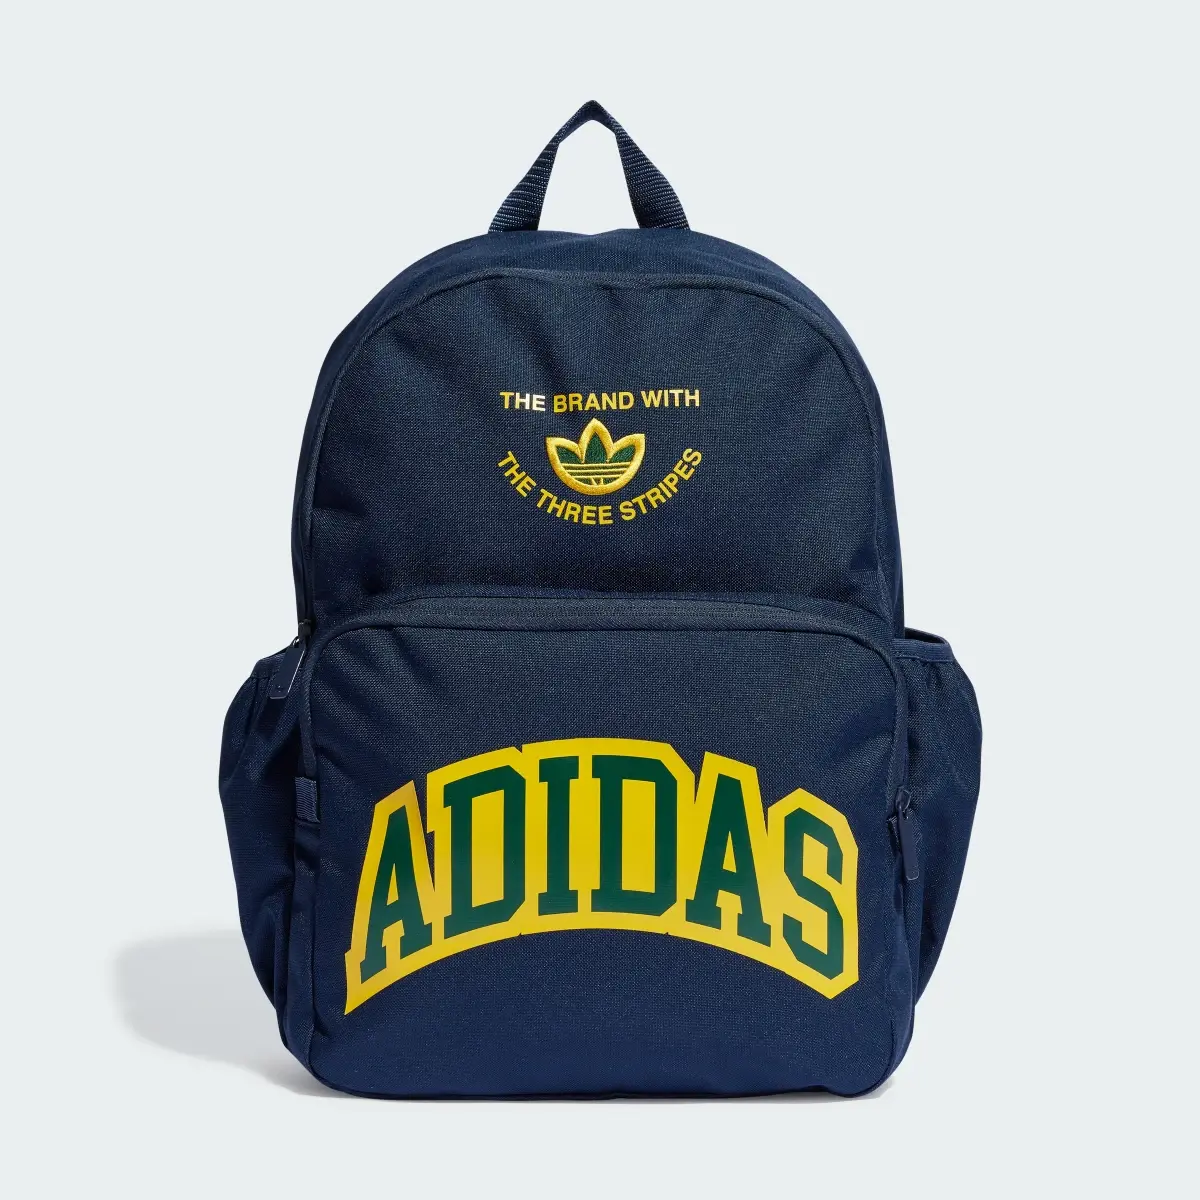 Adidas VRST Backpack. 2